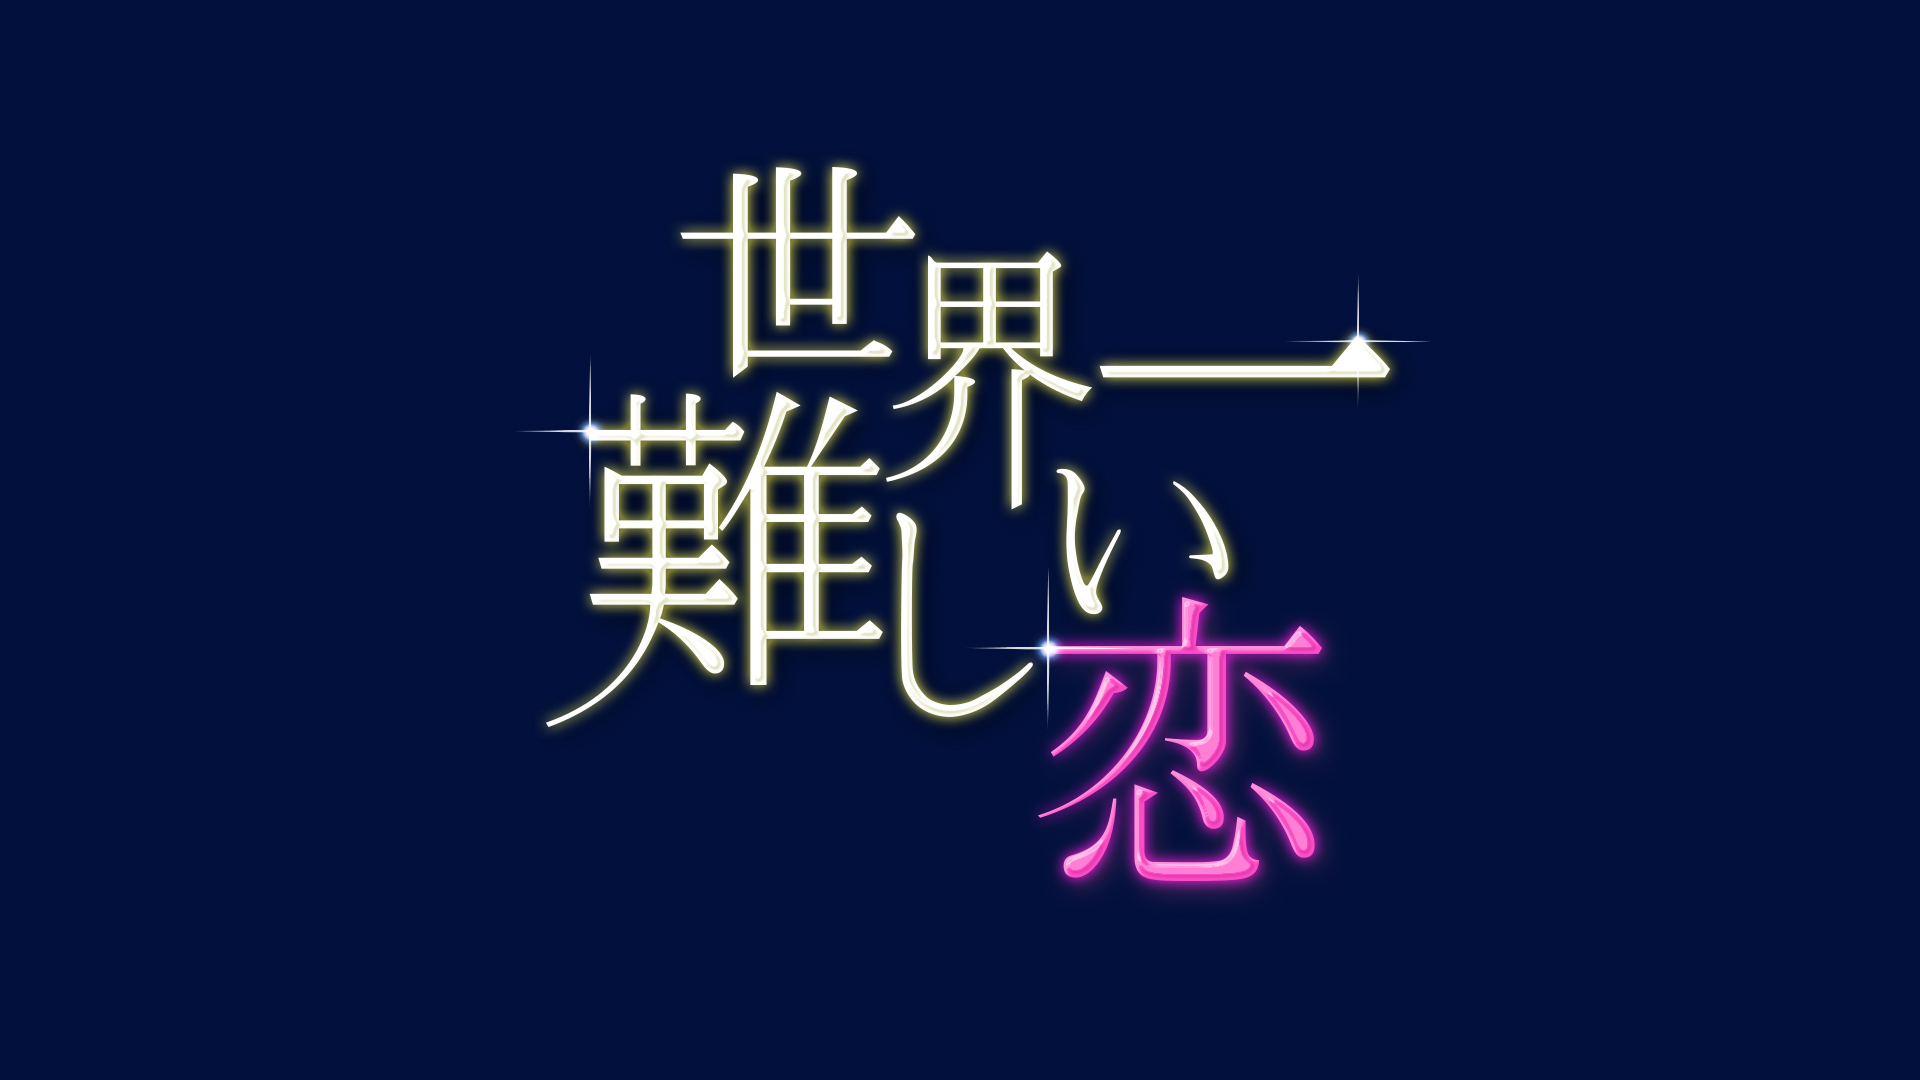 嵐・大野智さん主演のラブコメディ「世界一難しい恋」のロケ地をめぐる